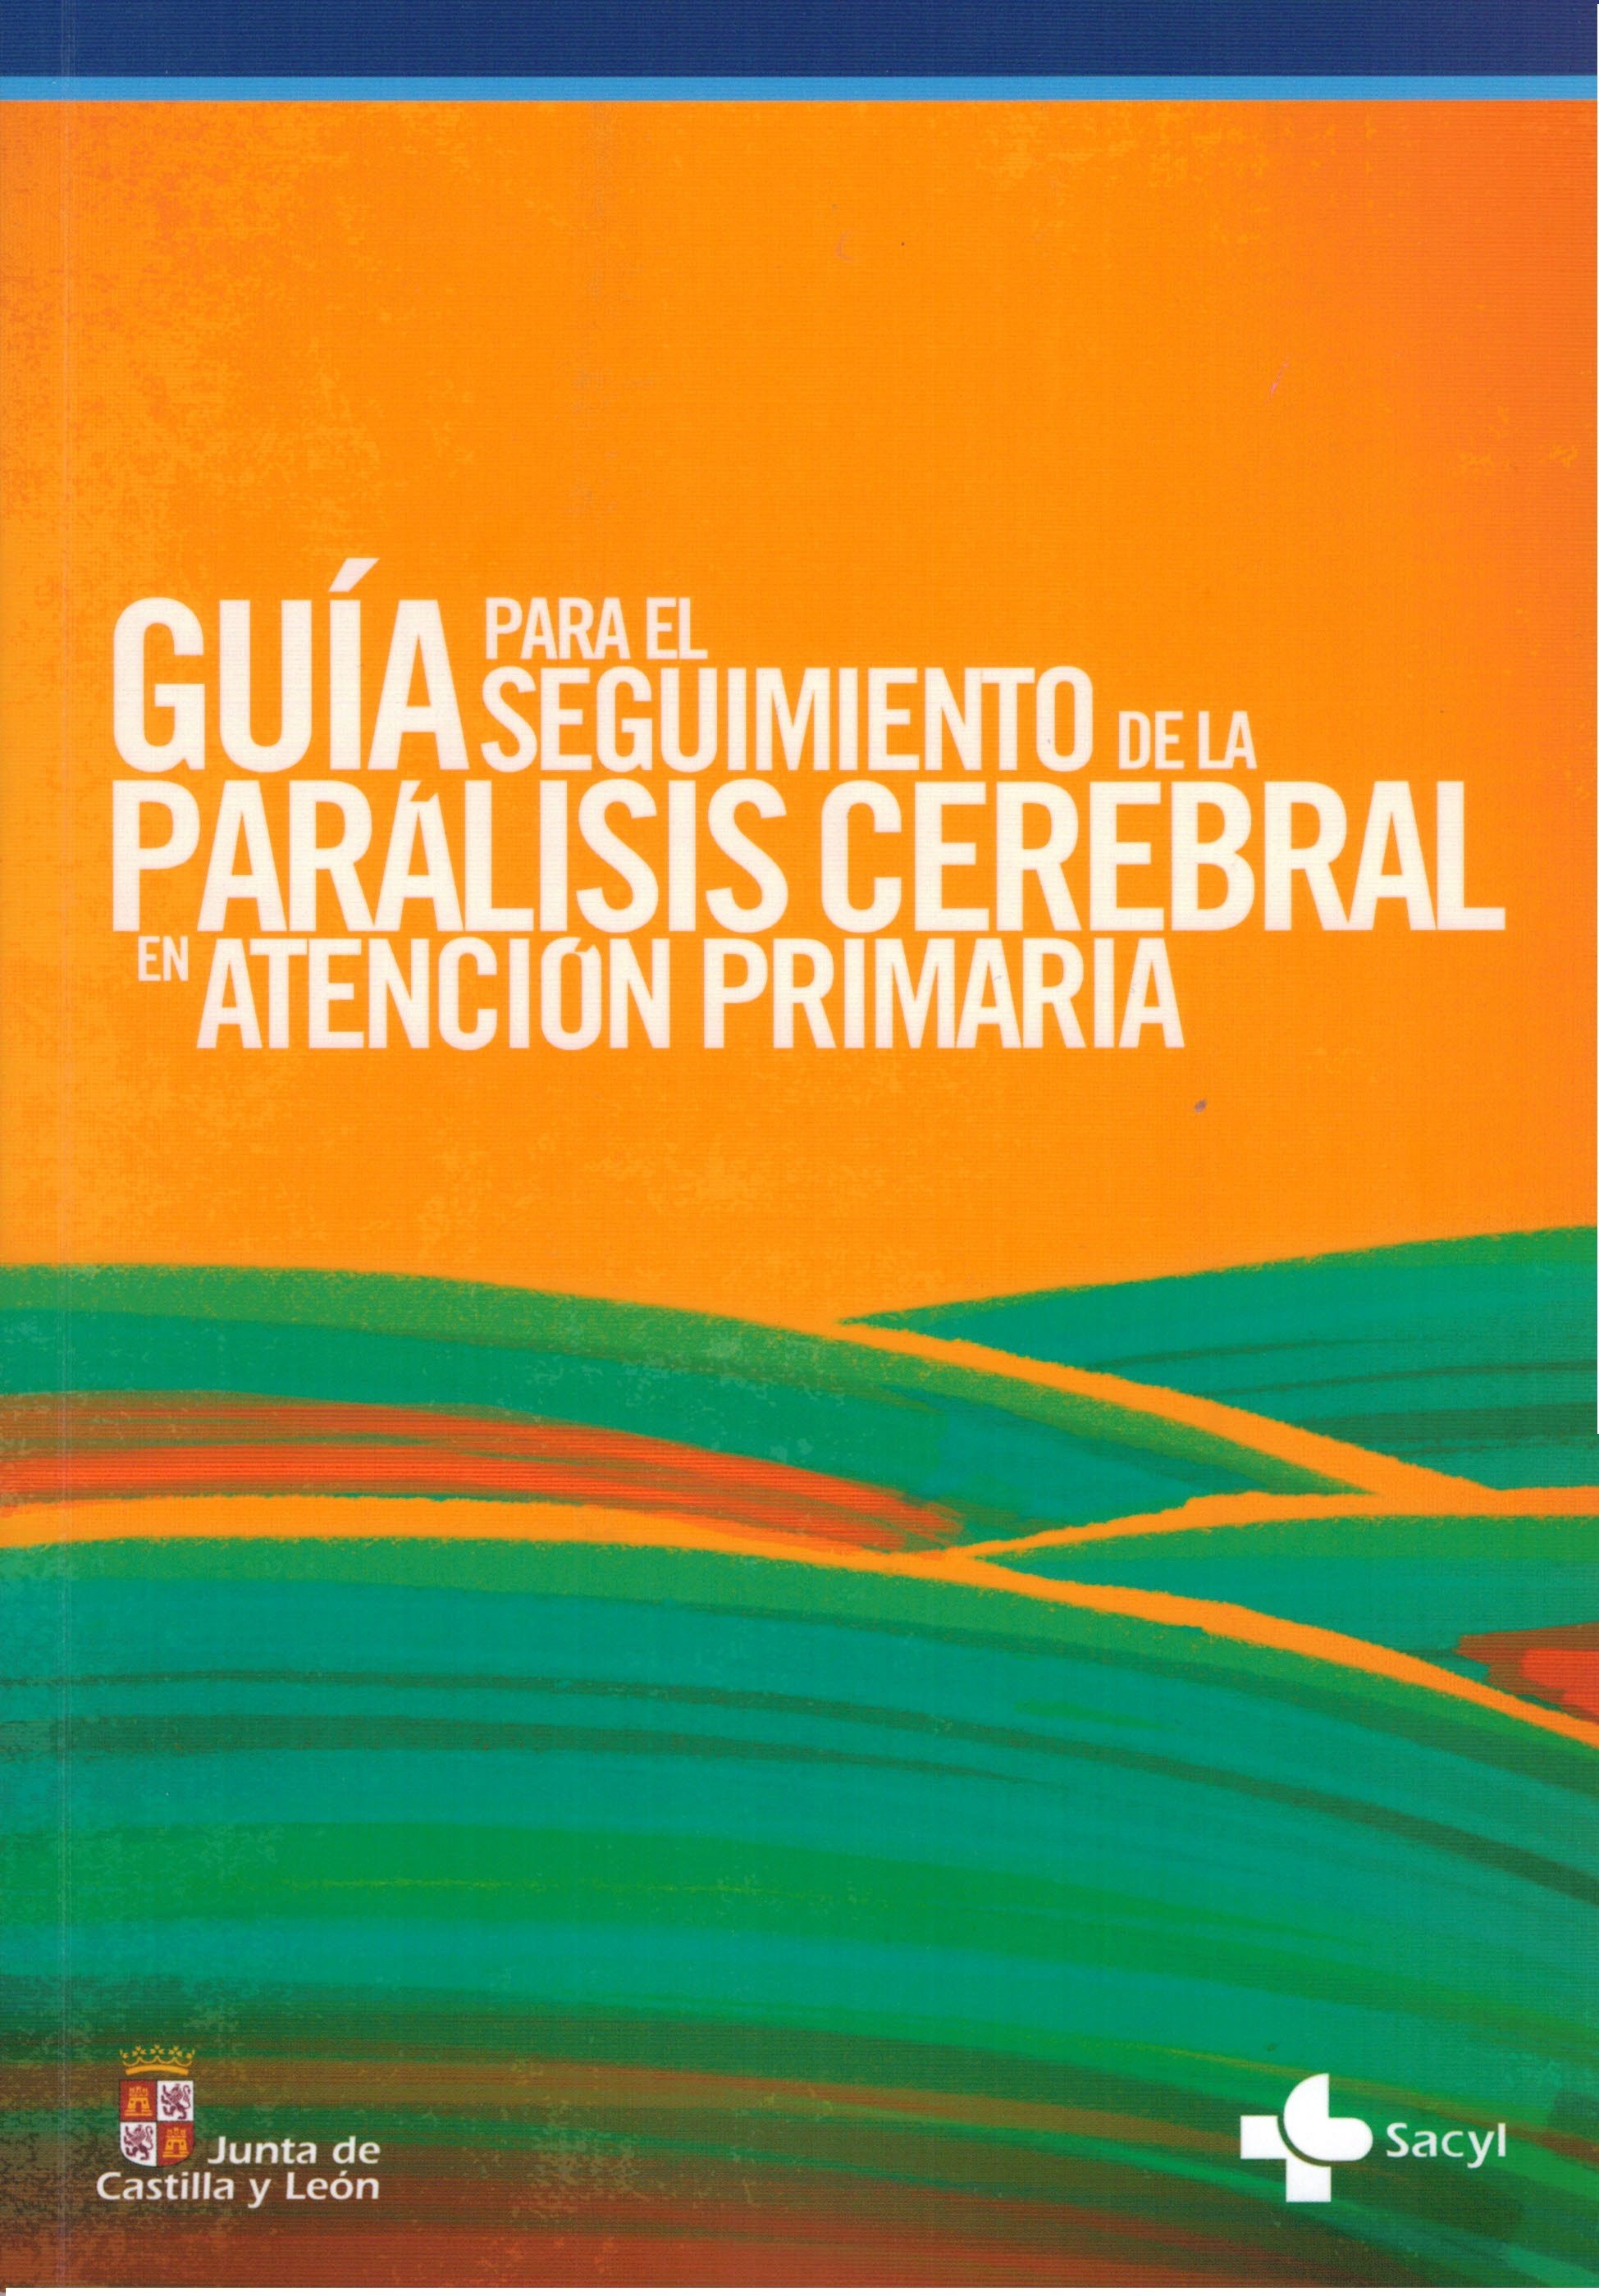 Presentación de la Guía para el Seguimiento de la Parálisis Cerebral en Atención Primaria. Soria